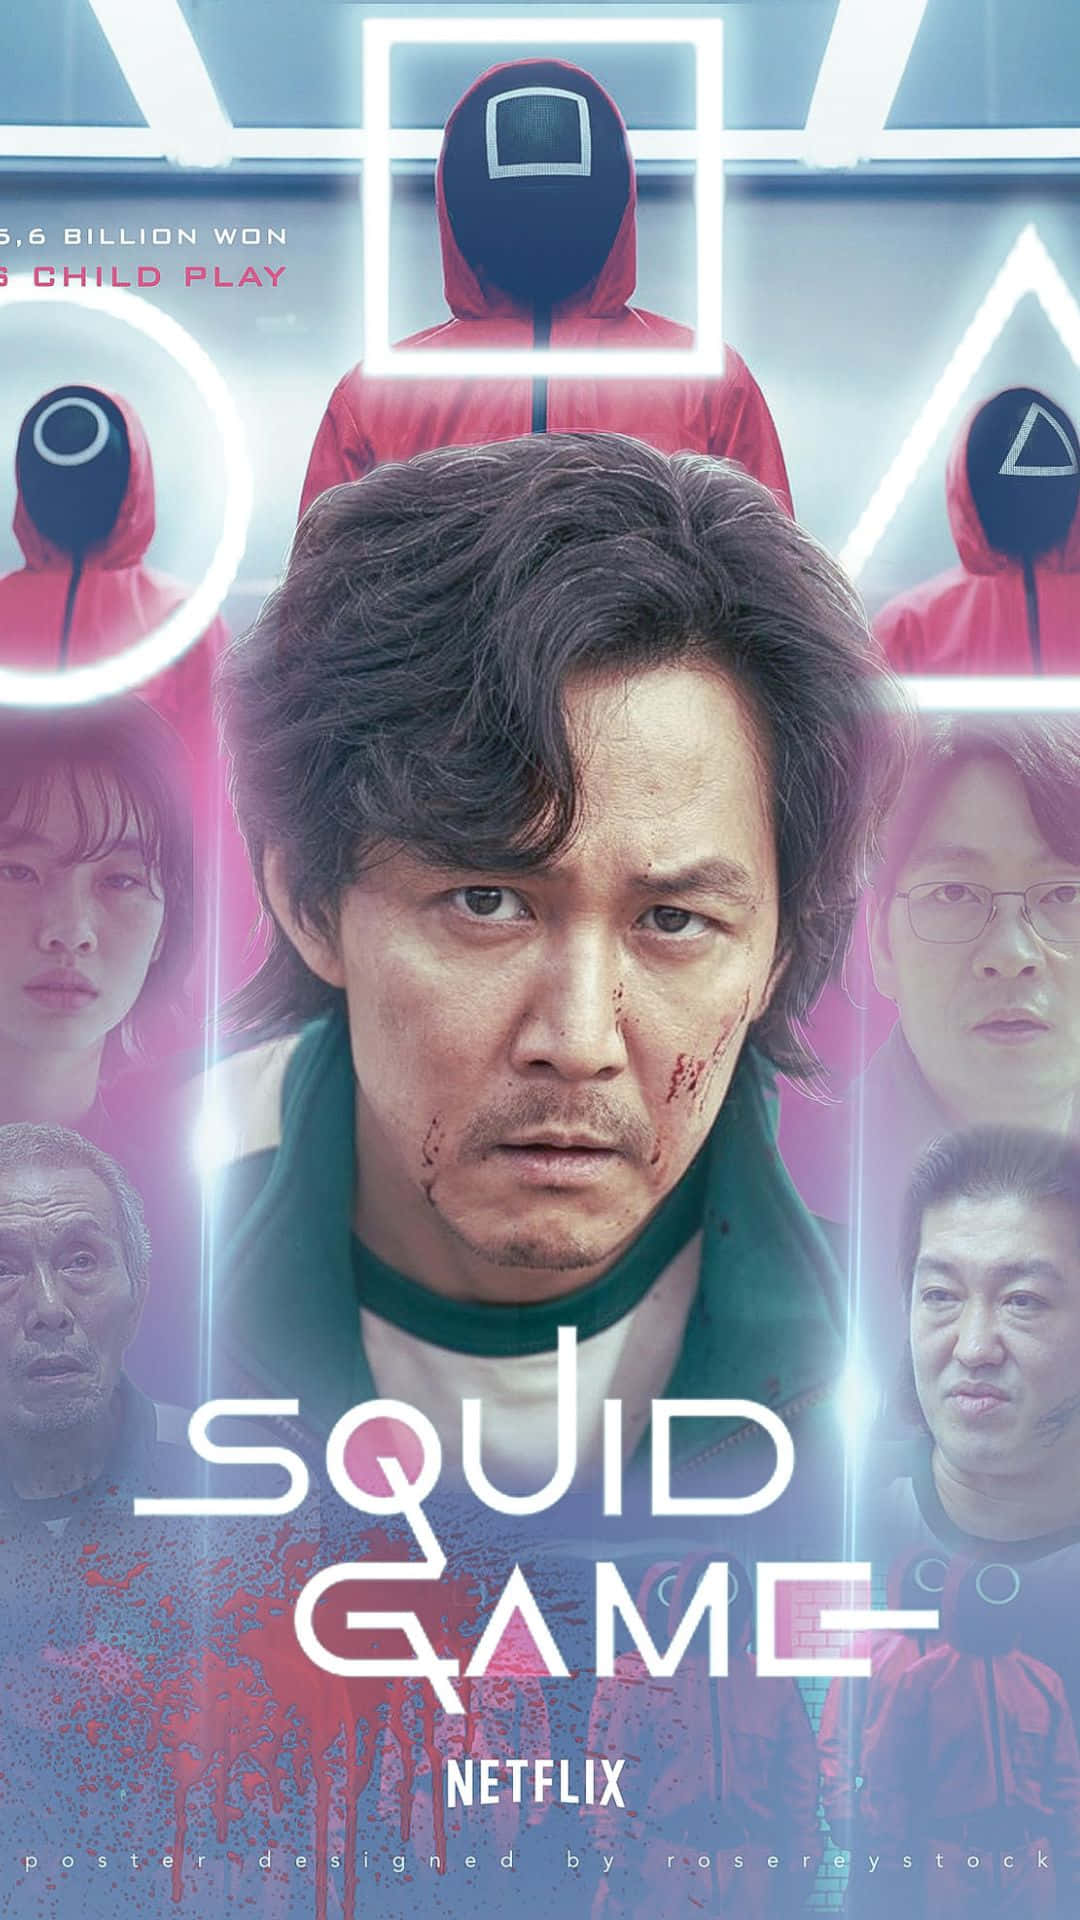 Billede af spillere der nyder squid-spillet på deres iPhones Wallpaper